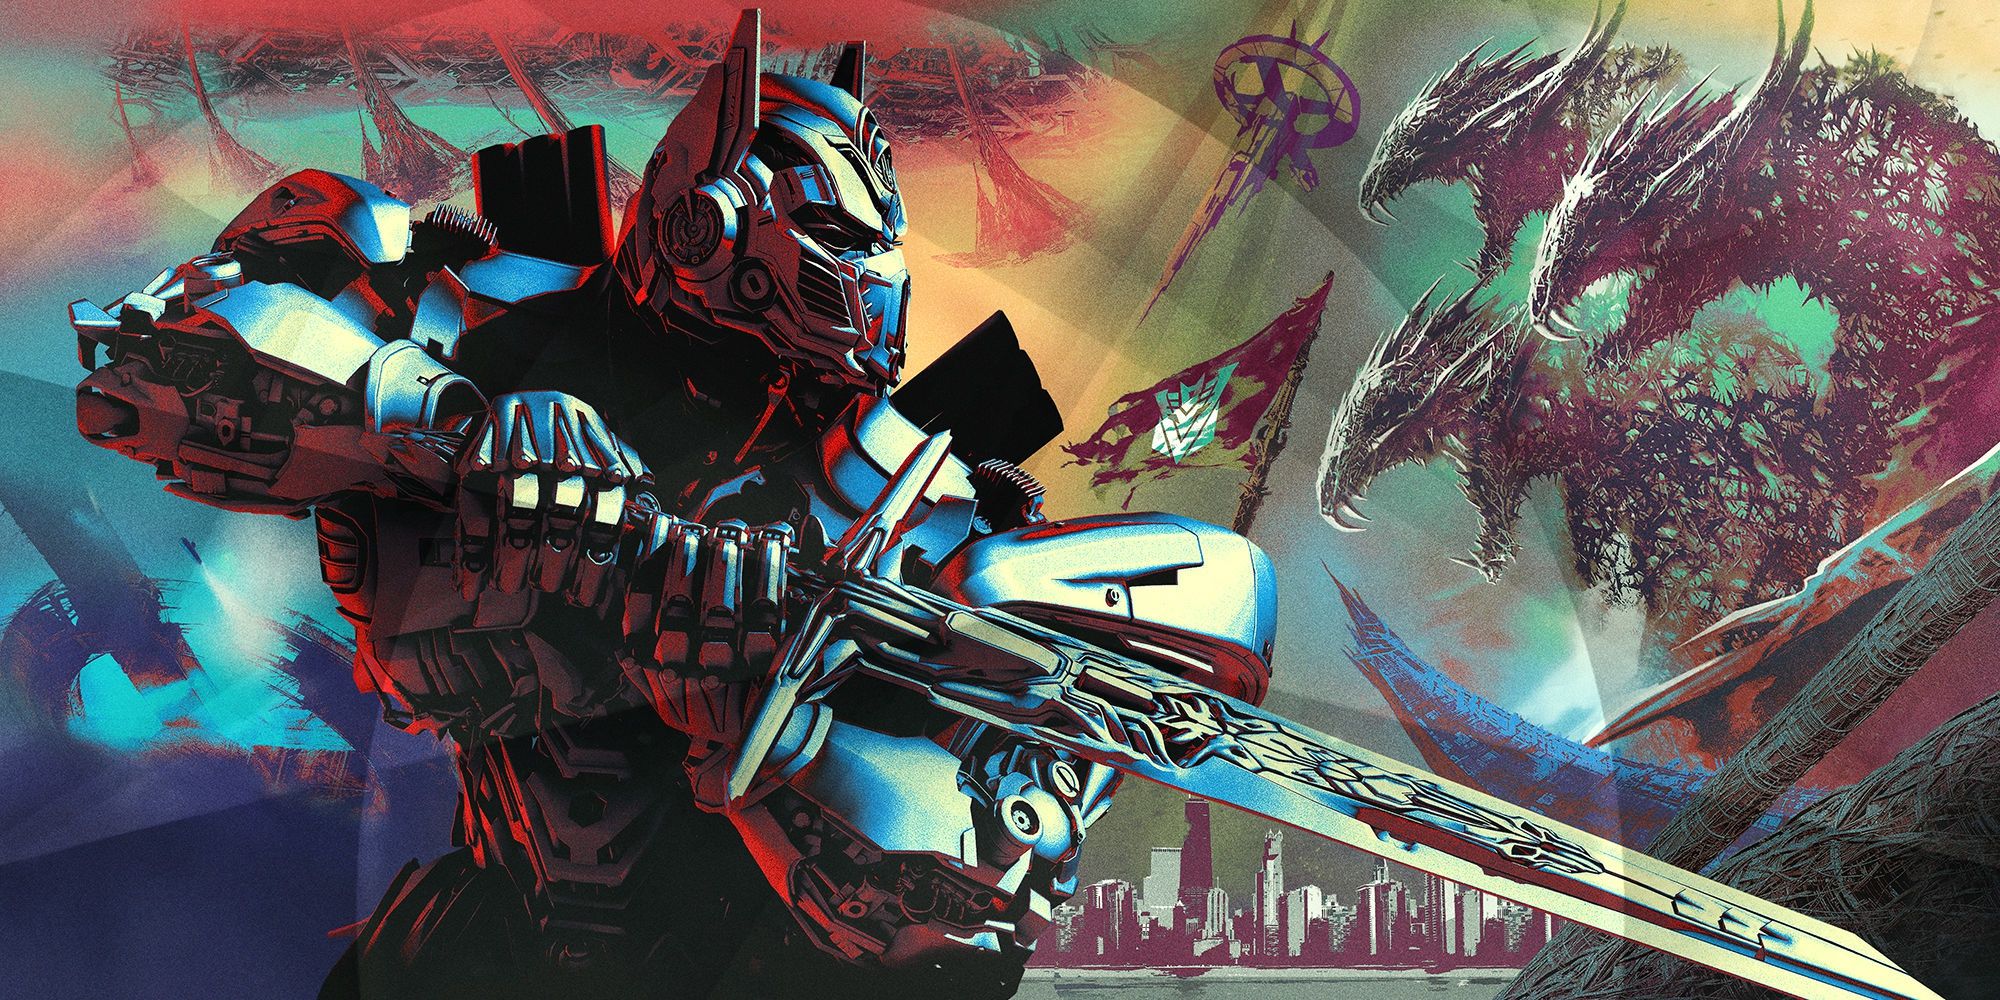 E' online il primo trailer italiano di Transformers: The Last Knight!